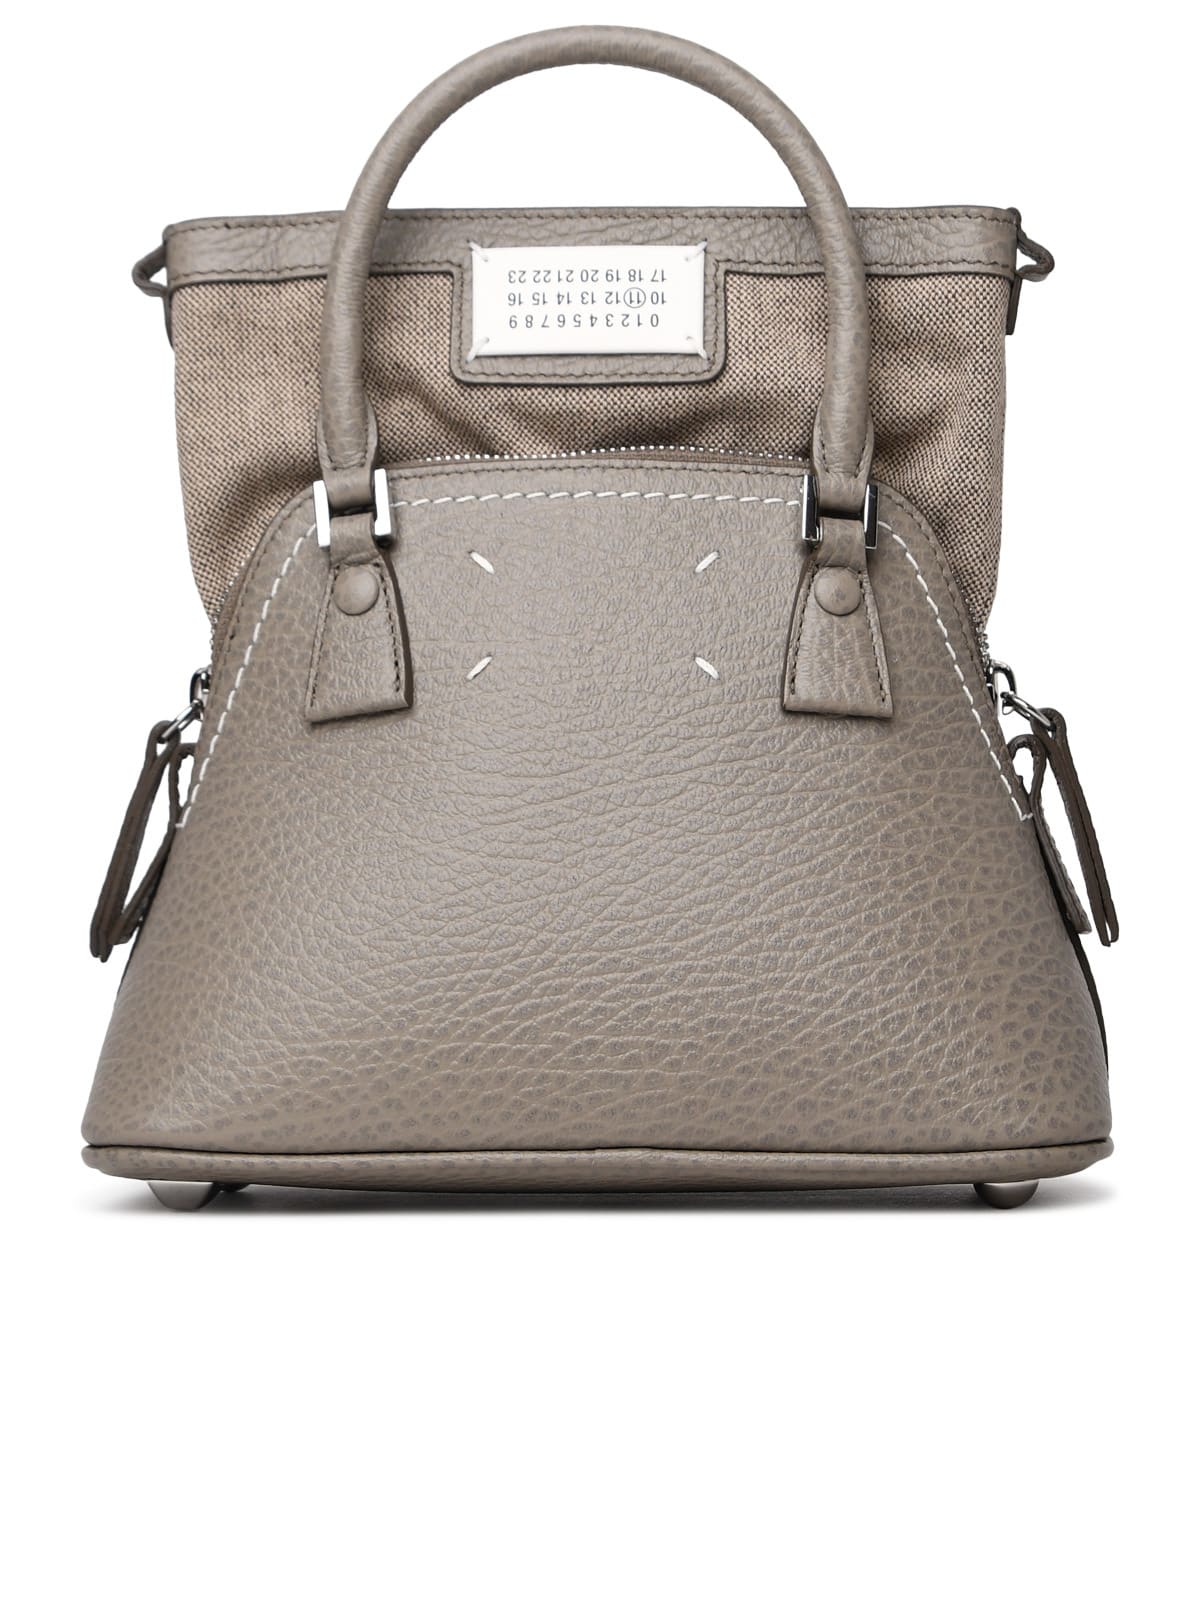 Micro 5ac Classique Bag In Dove-gray Leather